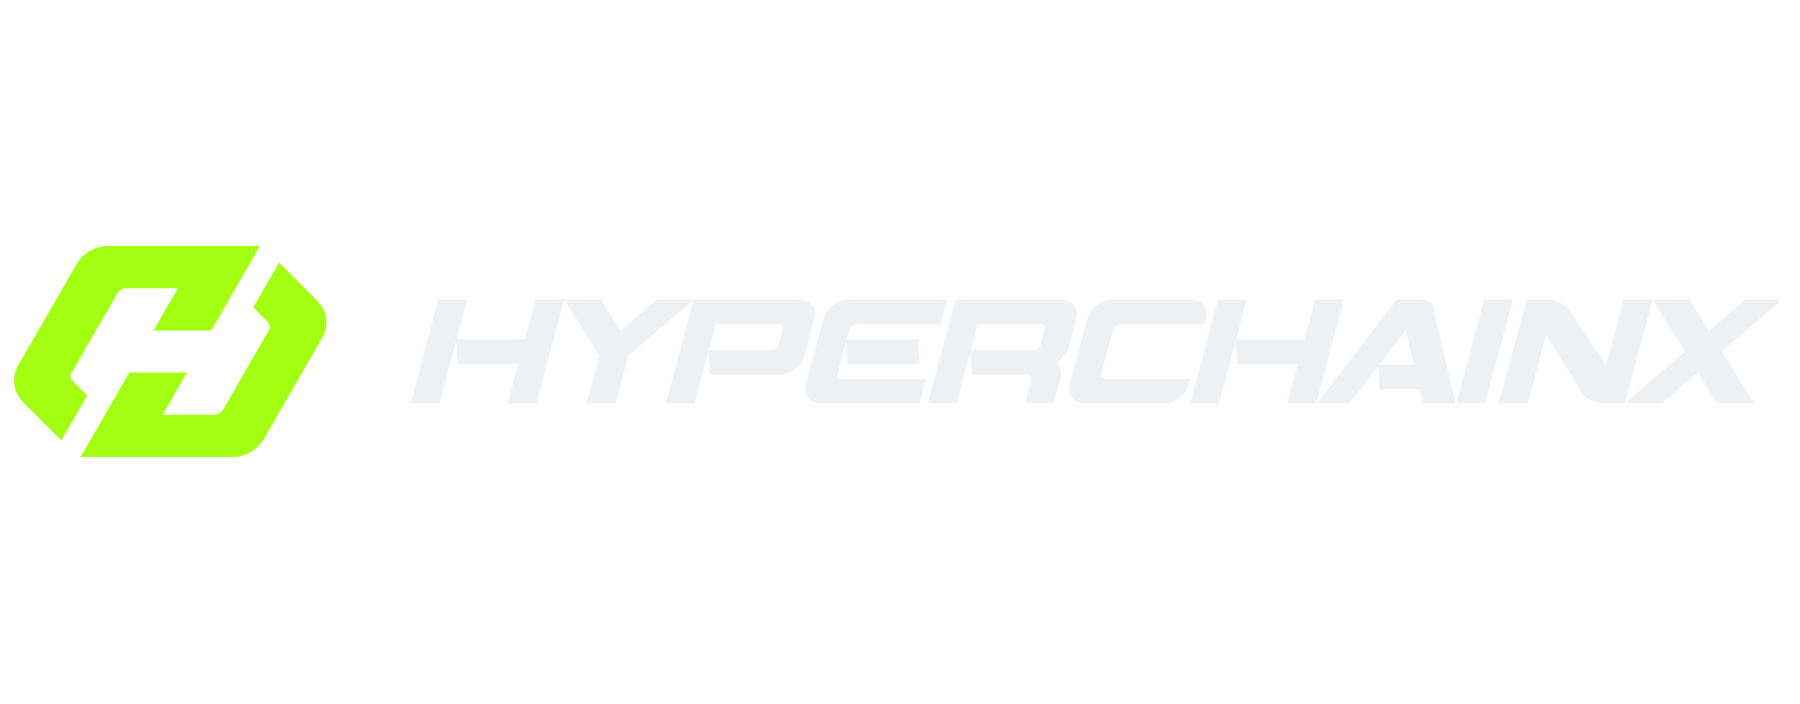 hyperchain x crypto